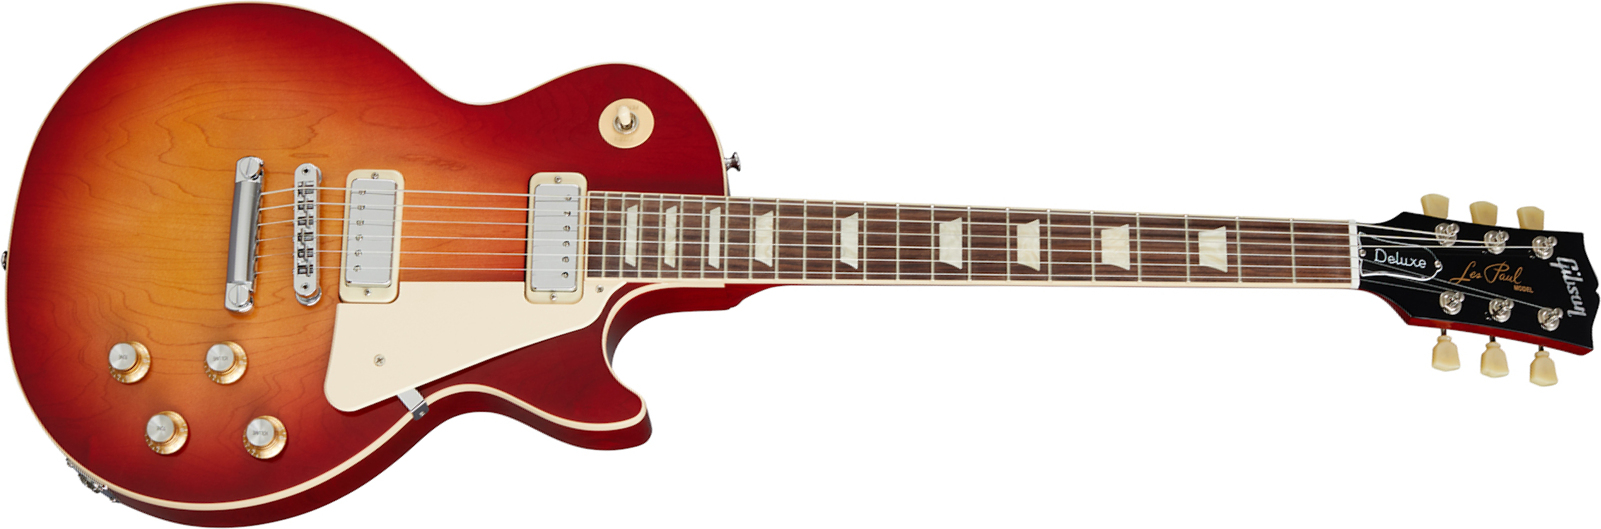 Gibson Les Paul Deluxe 70s Original 2mh Ht Rw - 70s Cherry Sunburst - Guitare Électrique Single Cut - Main picture